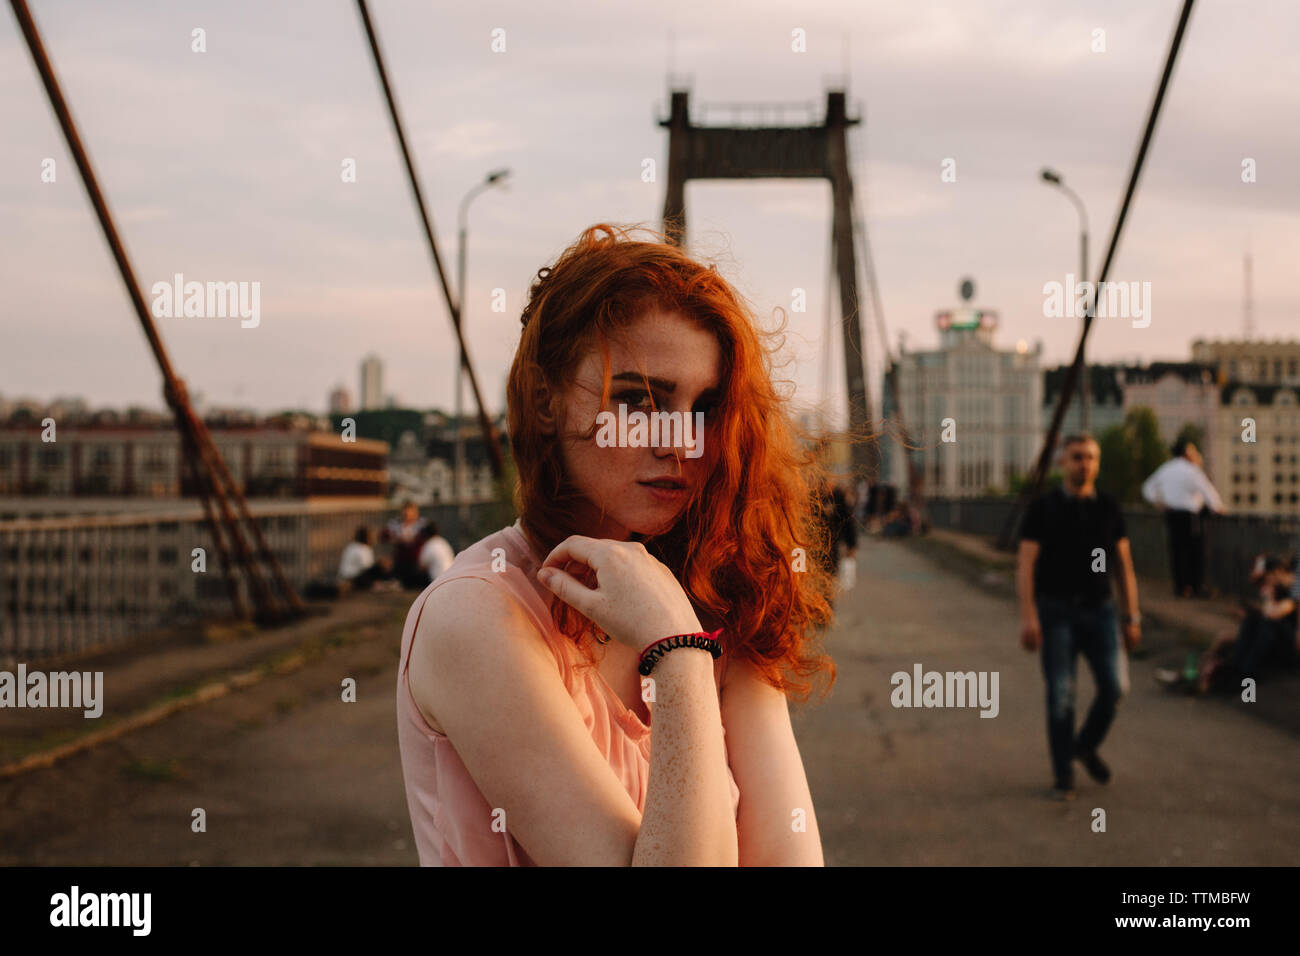 Portrait of cute young girl with red hair debout sur bridge en ville Banque D'Images